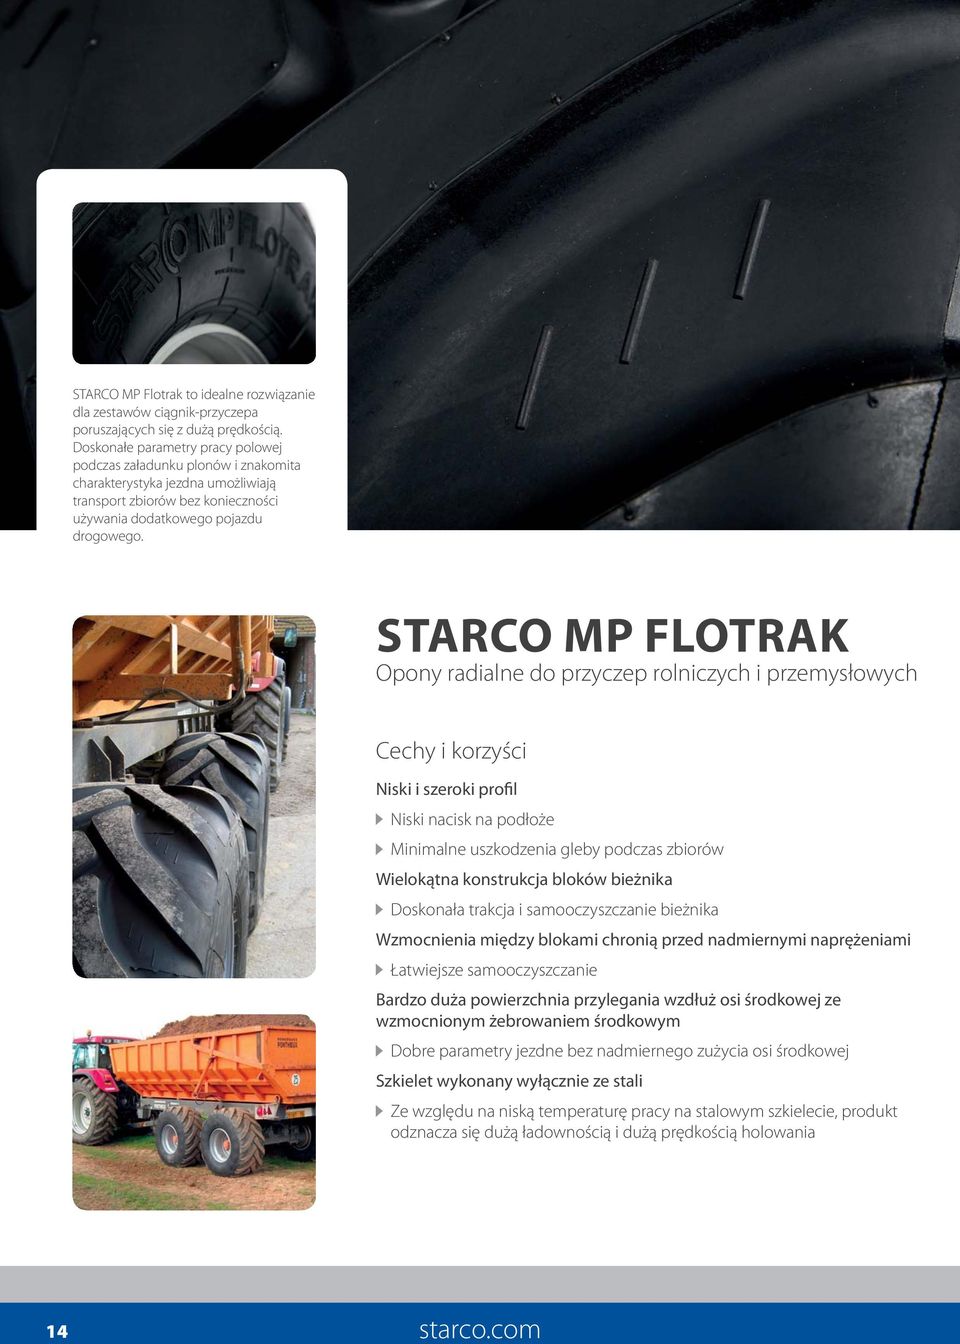 STARCO MP FLOTRAK Opony radialne do przyczep rolniczych i przemysłowych Cechy i korzyści Niski i szeroki profil Niski nacisk na podłoże Minimalne uszkodzenia gleby podczas zbiorów Wielokątna